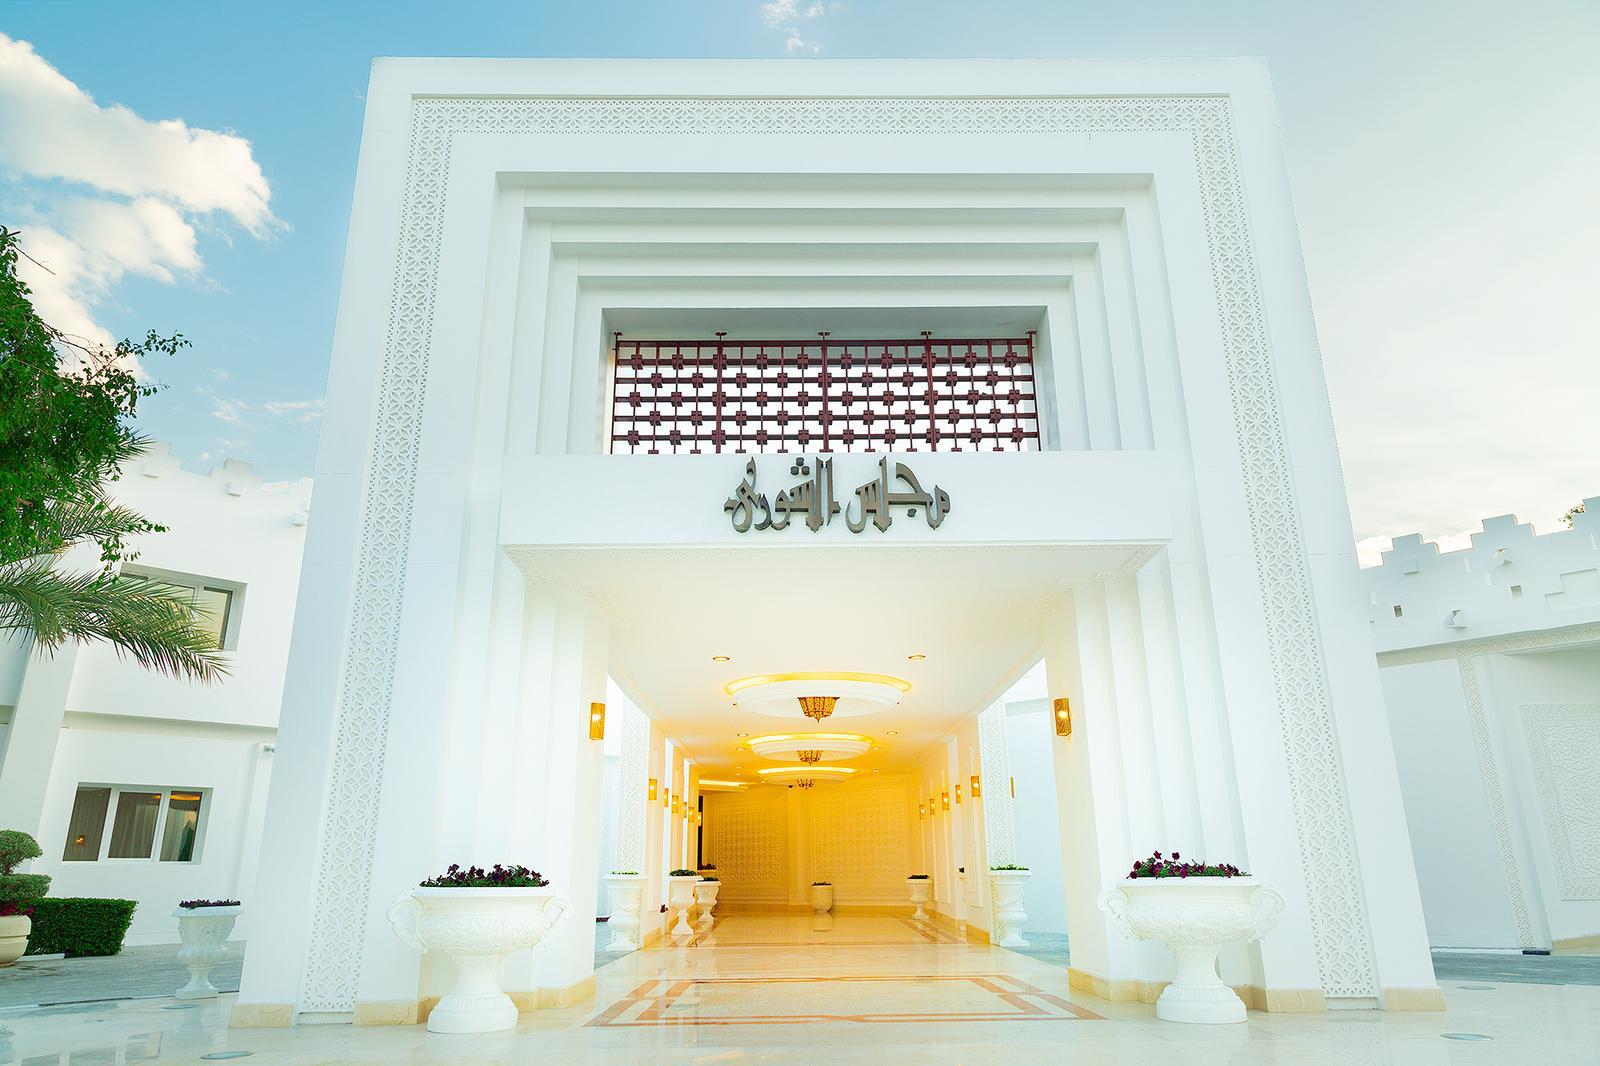 مجلس الشورى - القصر الأبيض، دولة قطر - الدوحة